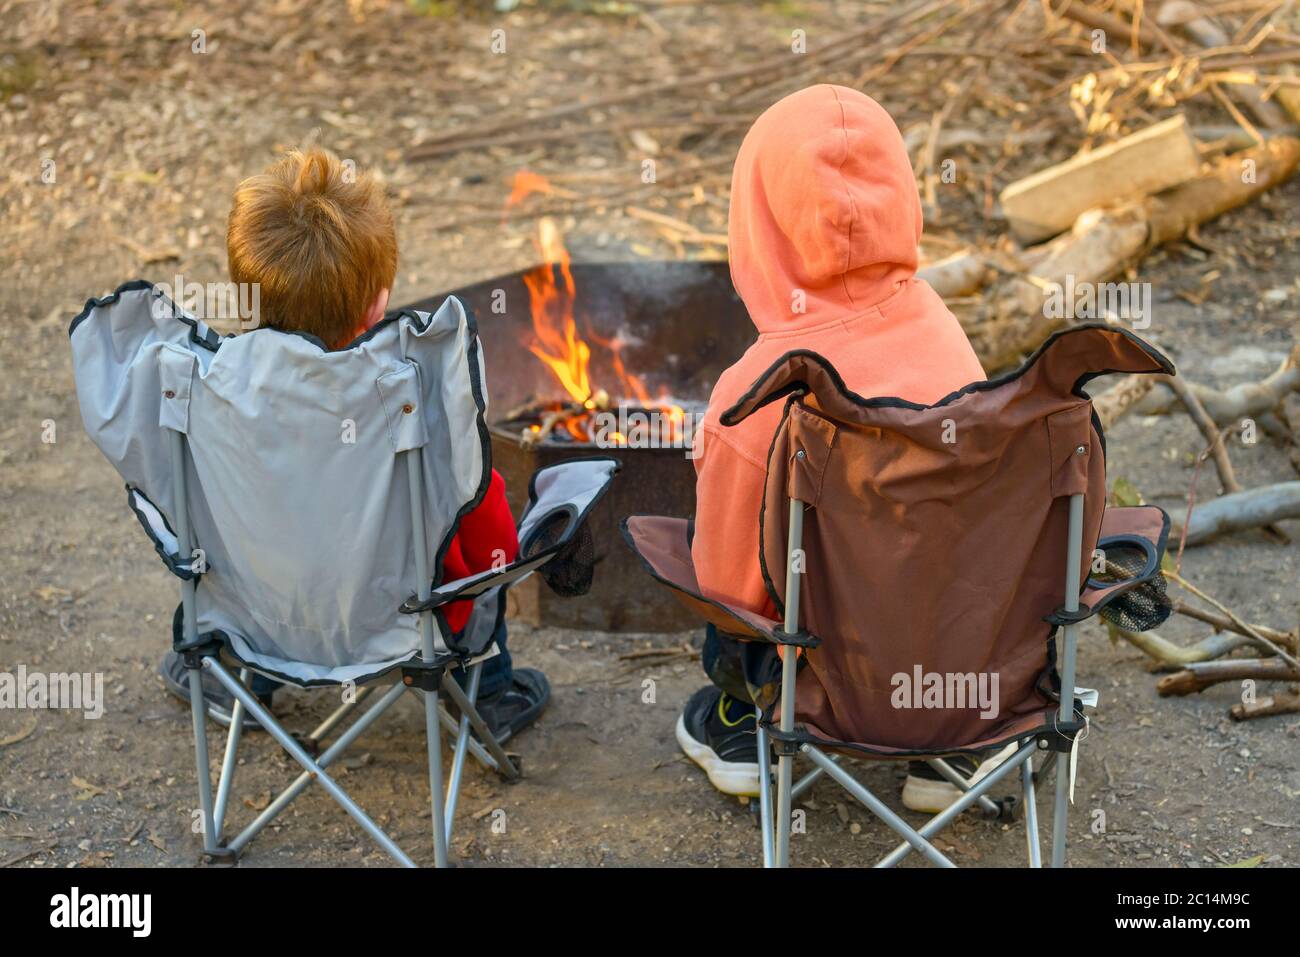 Kinder brennen Feuer auf Kuitpo Wald Campingplatz während der Winterschulferien, South Australia Stockfoto